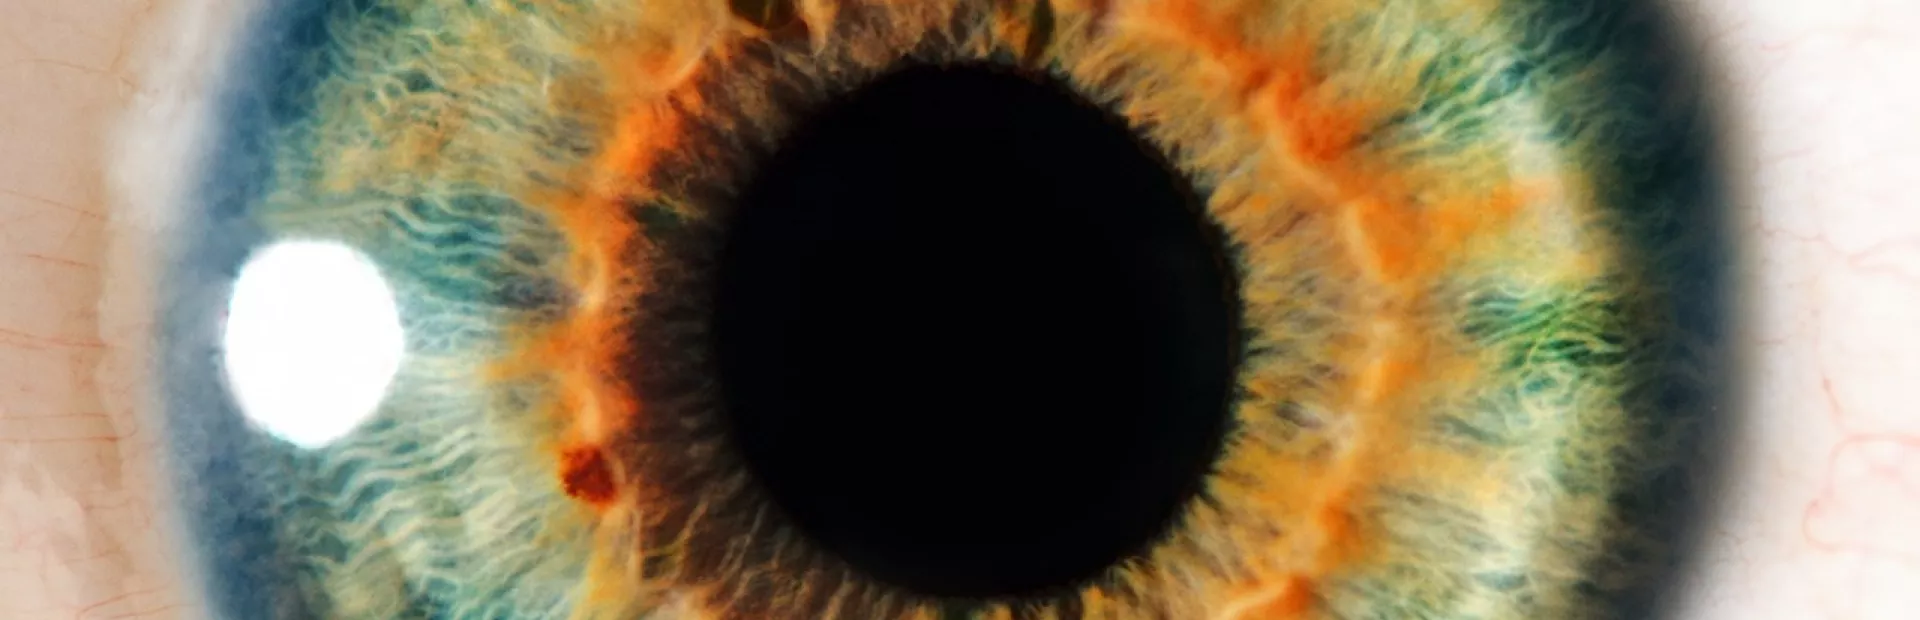 Human Eye Closeup